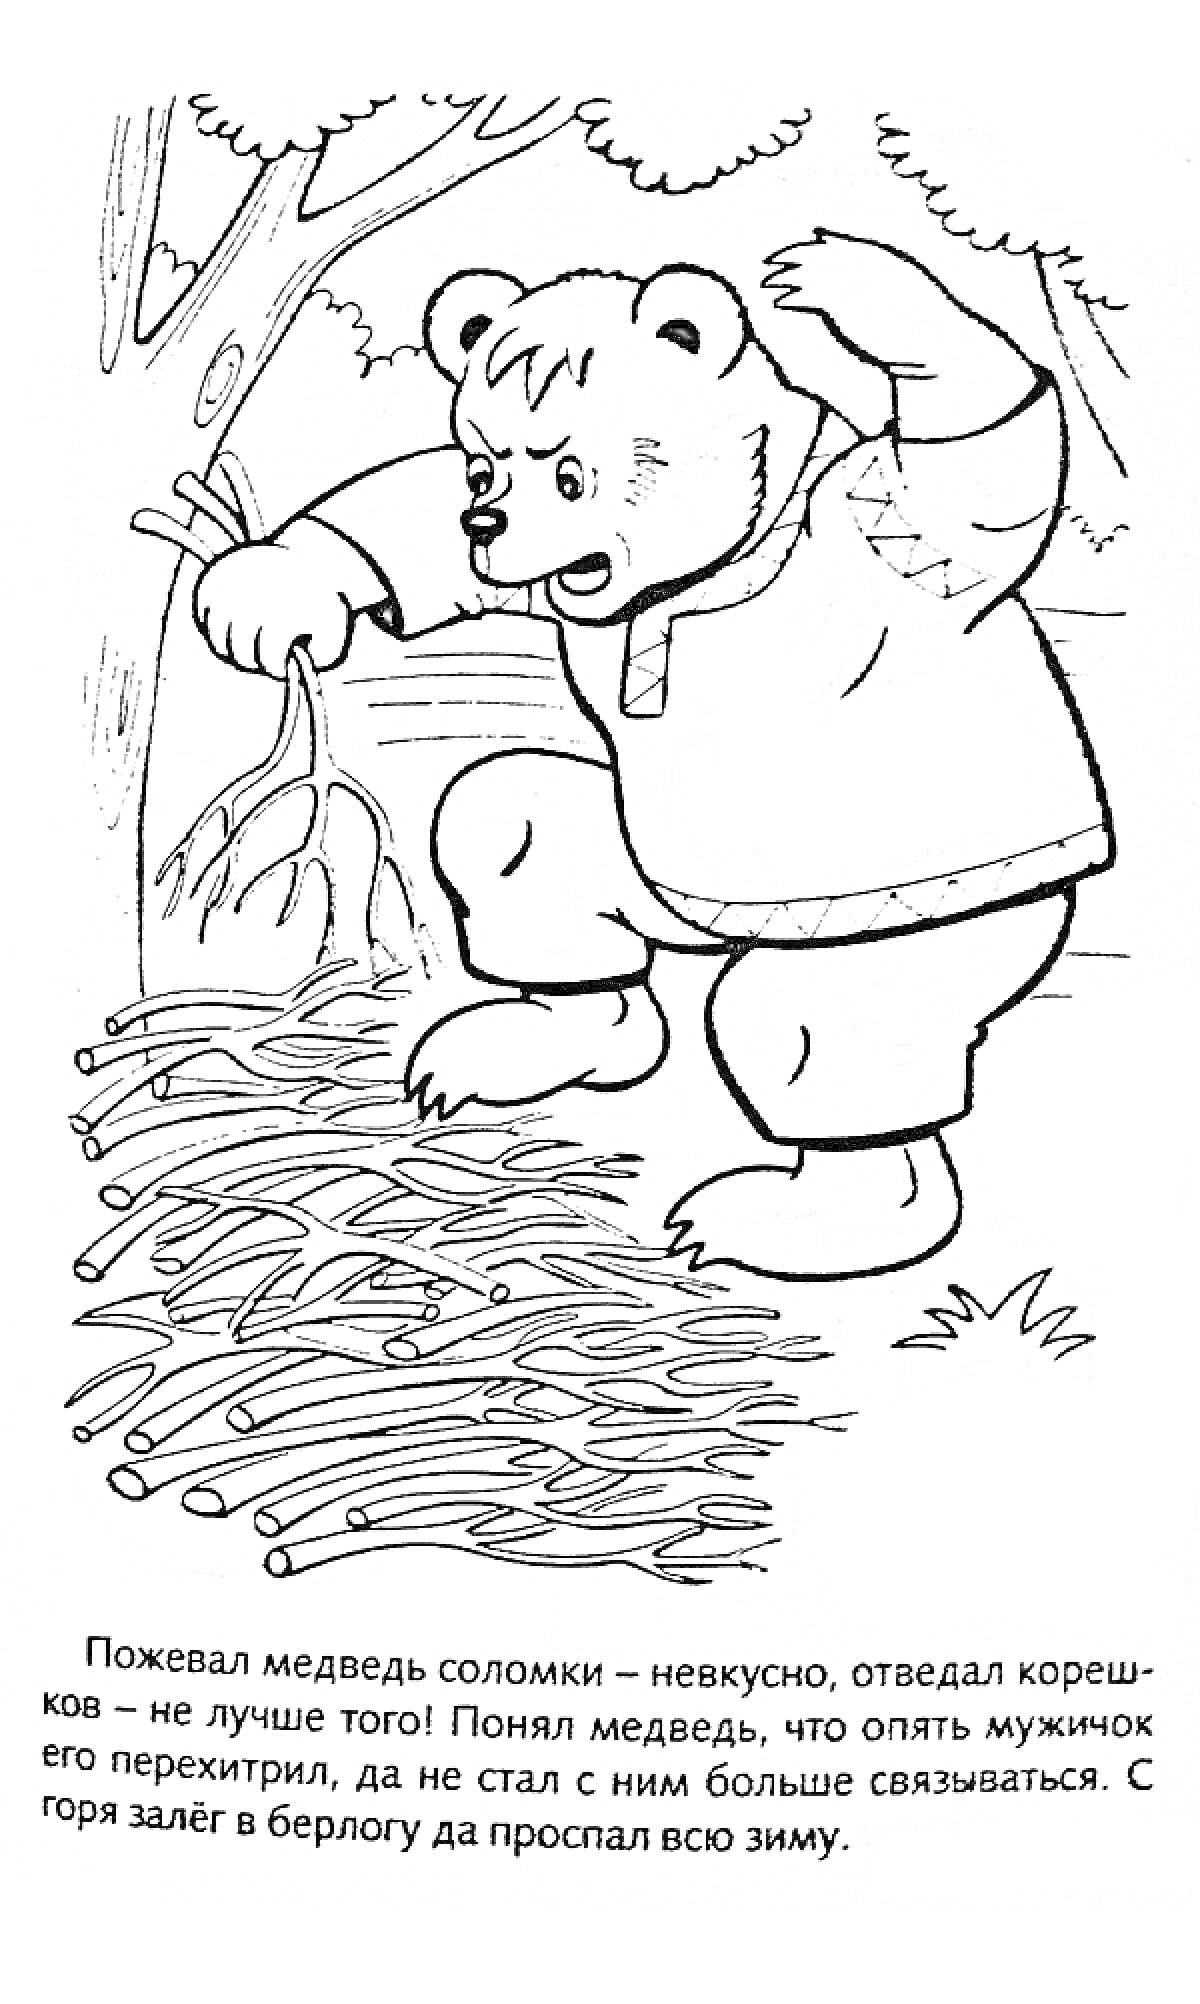 Медведь у костра с корешками и соломой в лесу на фоне деревьев